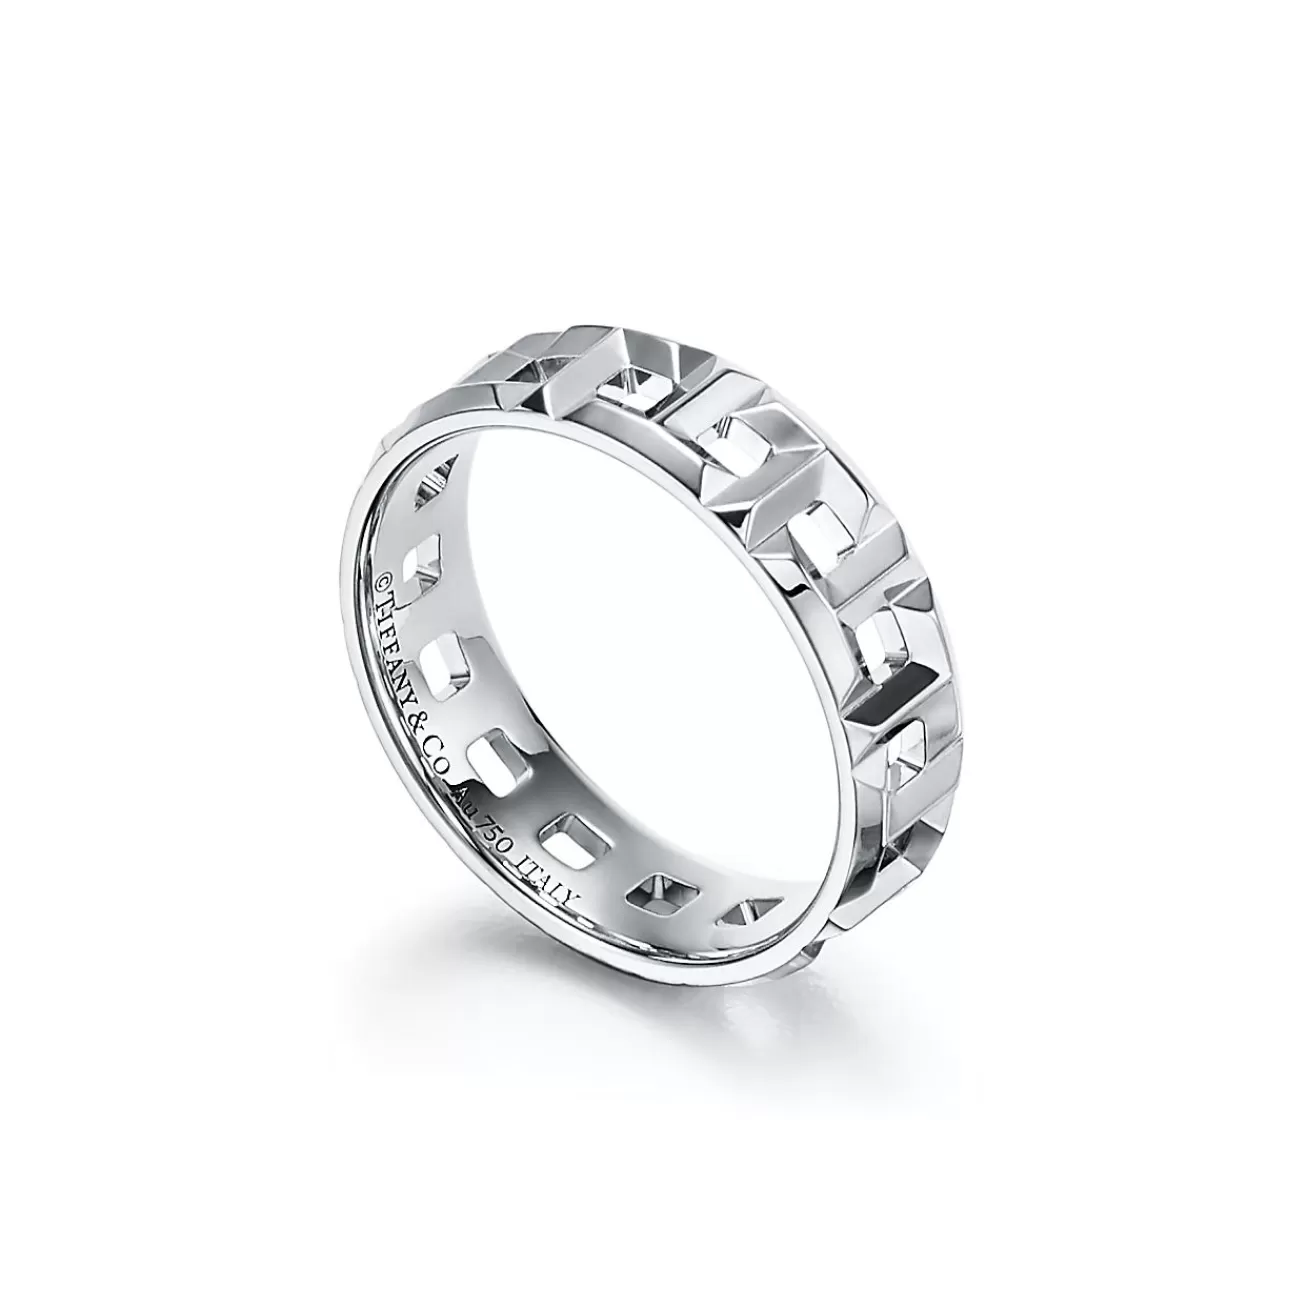 Tiffany & Co. Tiffany T True wide ring in 18k white gold, 5.5 mm wide. | ^Women Rings | Men's Jewelry